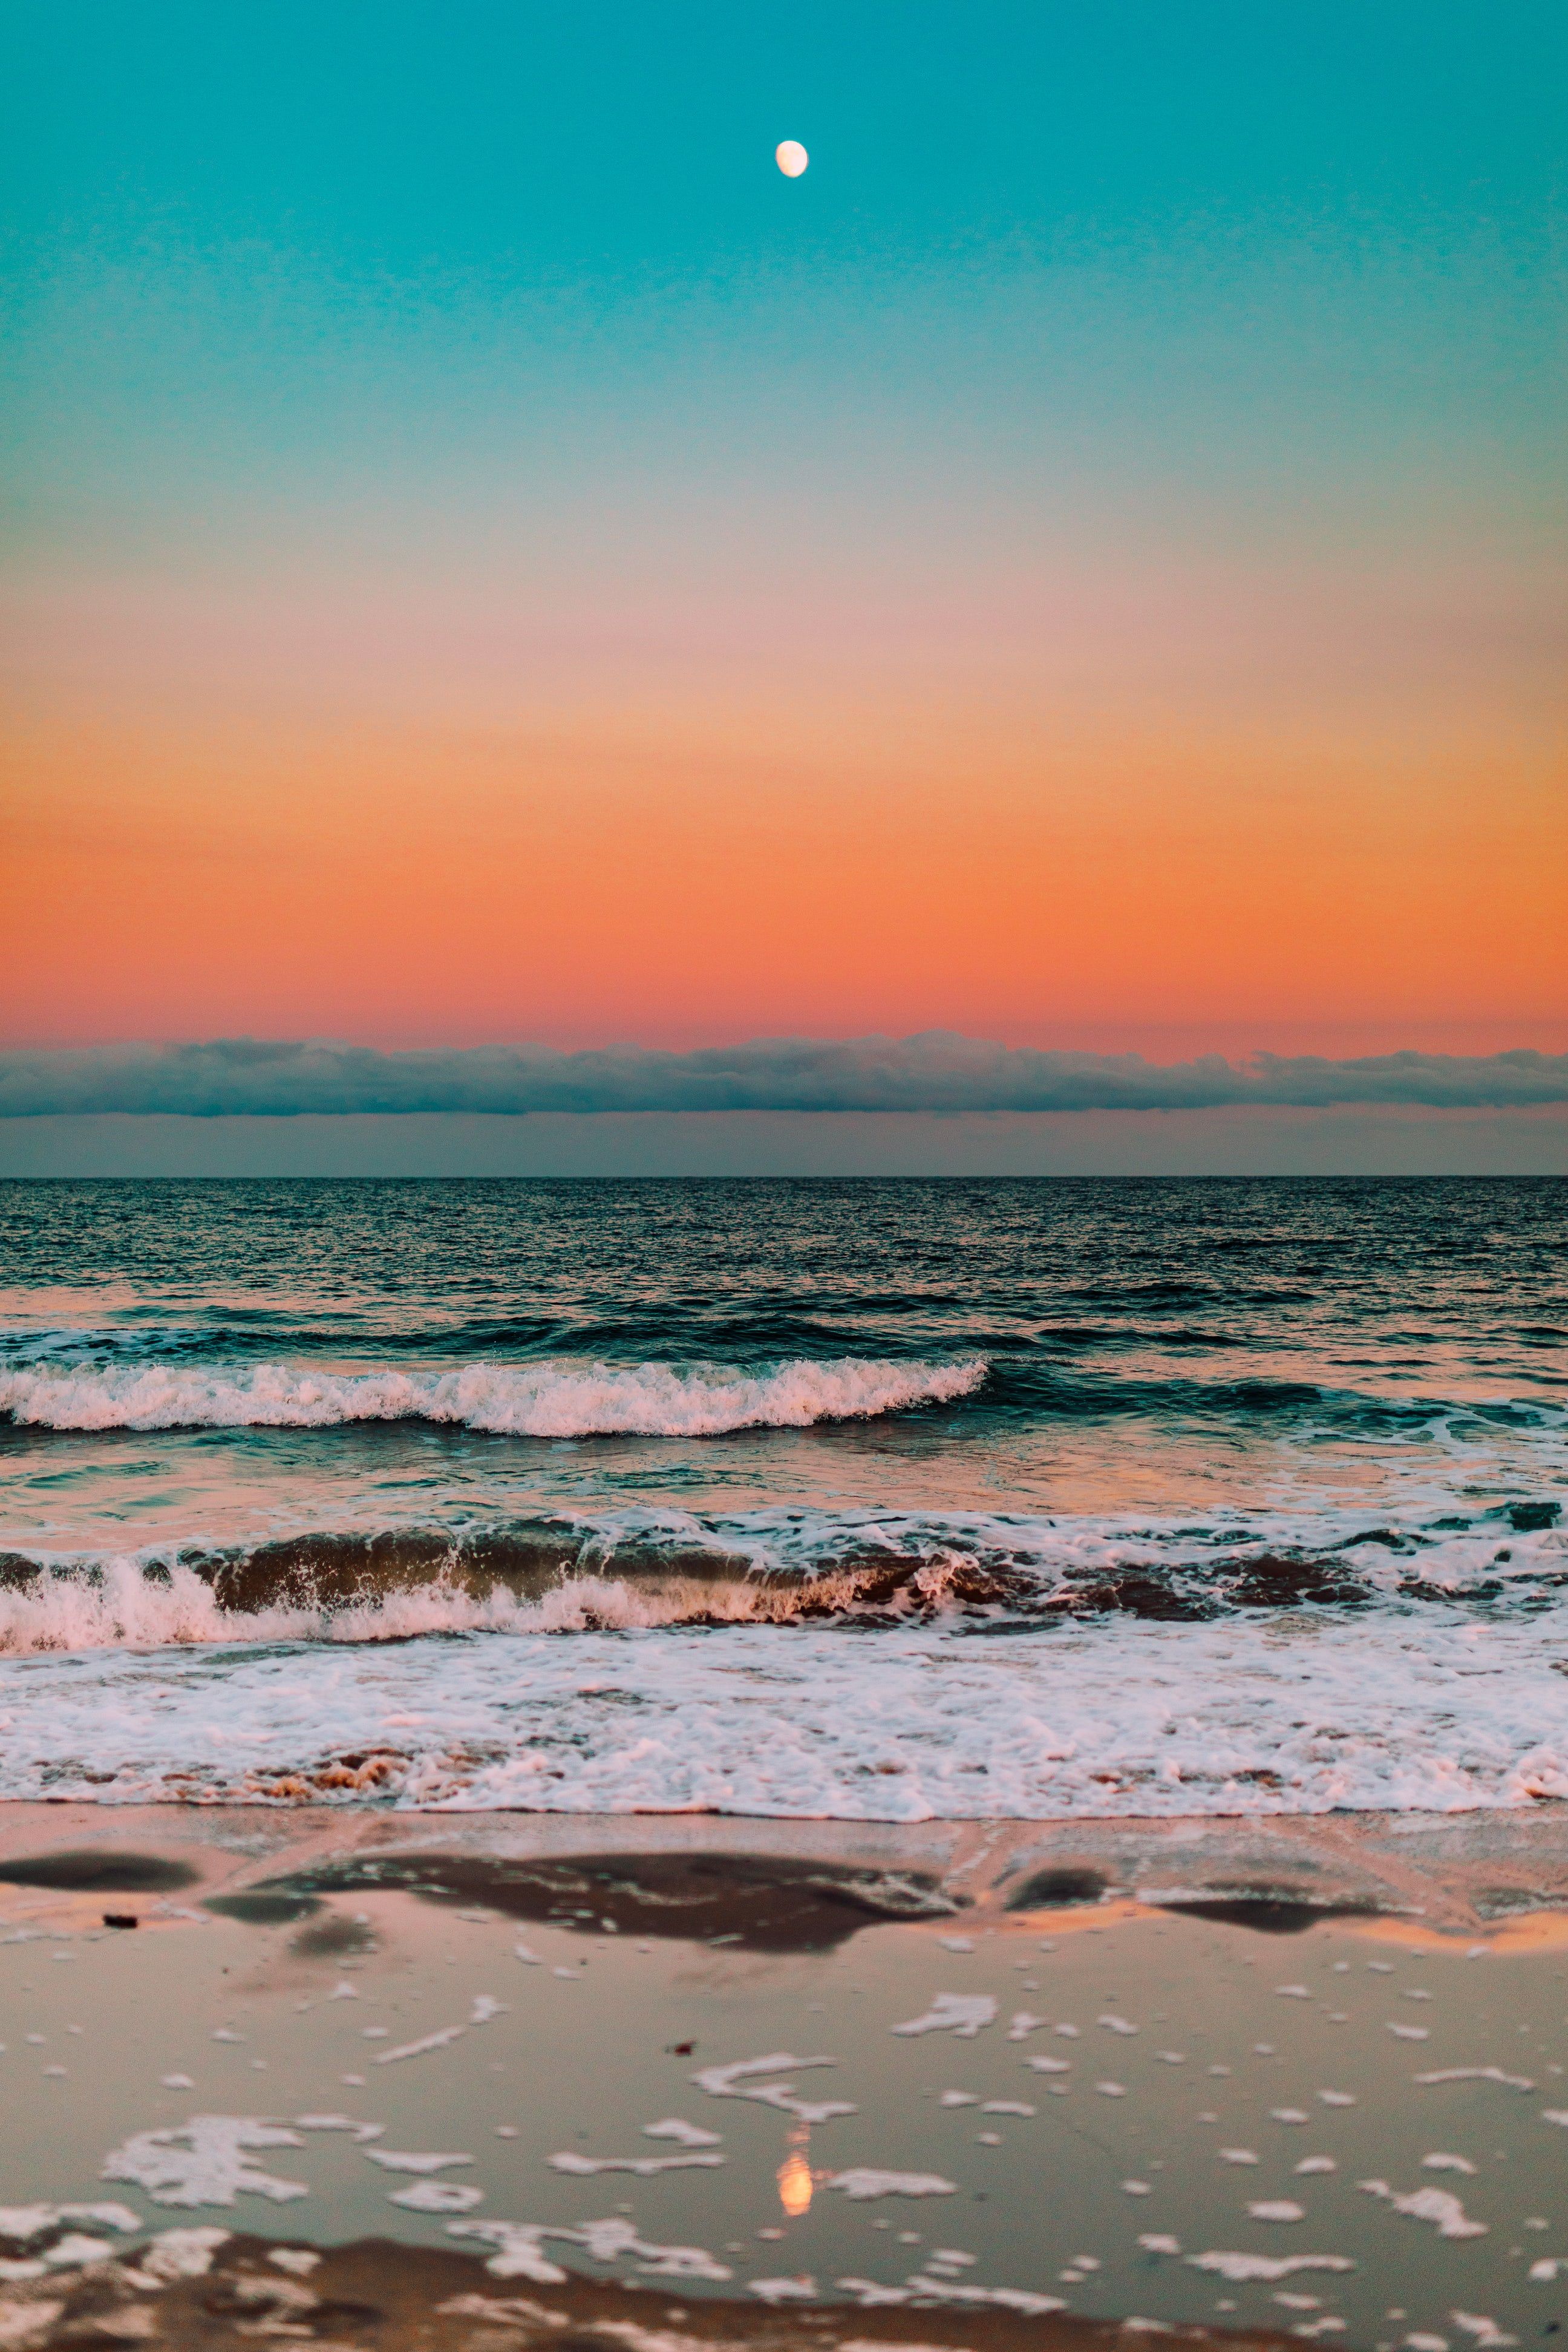 Sóng biển vẫn là nguồn cảm hứng lớn cho các nhiếp ảnh gia năm châu. Để trải nghiệm những tia nắng đầu tiên tại bình minh, ngắm nhìn những đợt sóng kéo dài, bạn sẽ tìm thấy cảm xúc sâu thẳm tỏa ra từ mỗi bức ảnh. Hãy cùng nhìn những hình ảnh này để đắm mình vào biển cả.